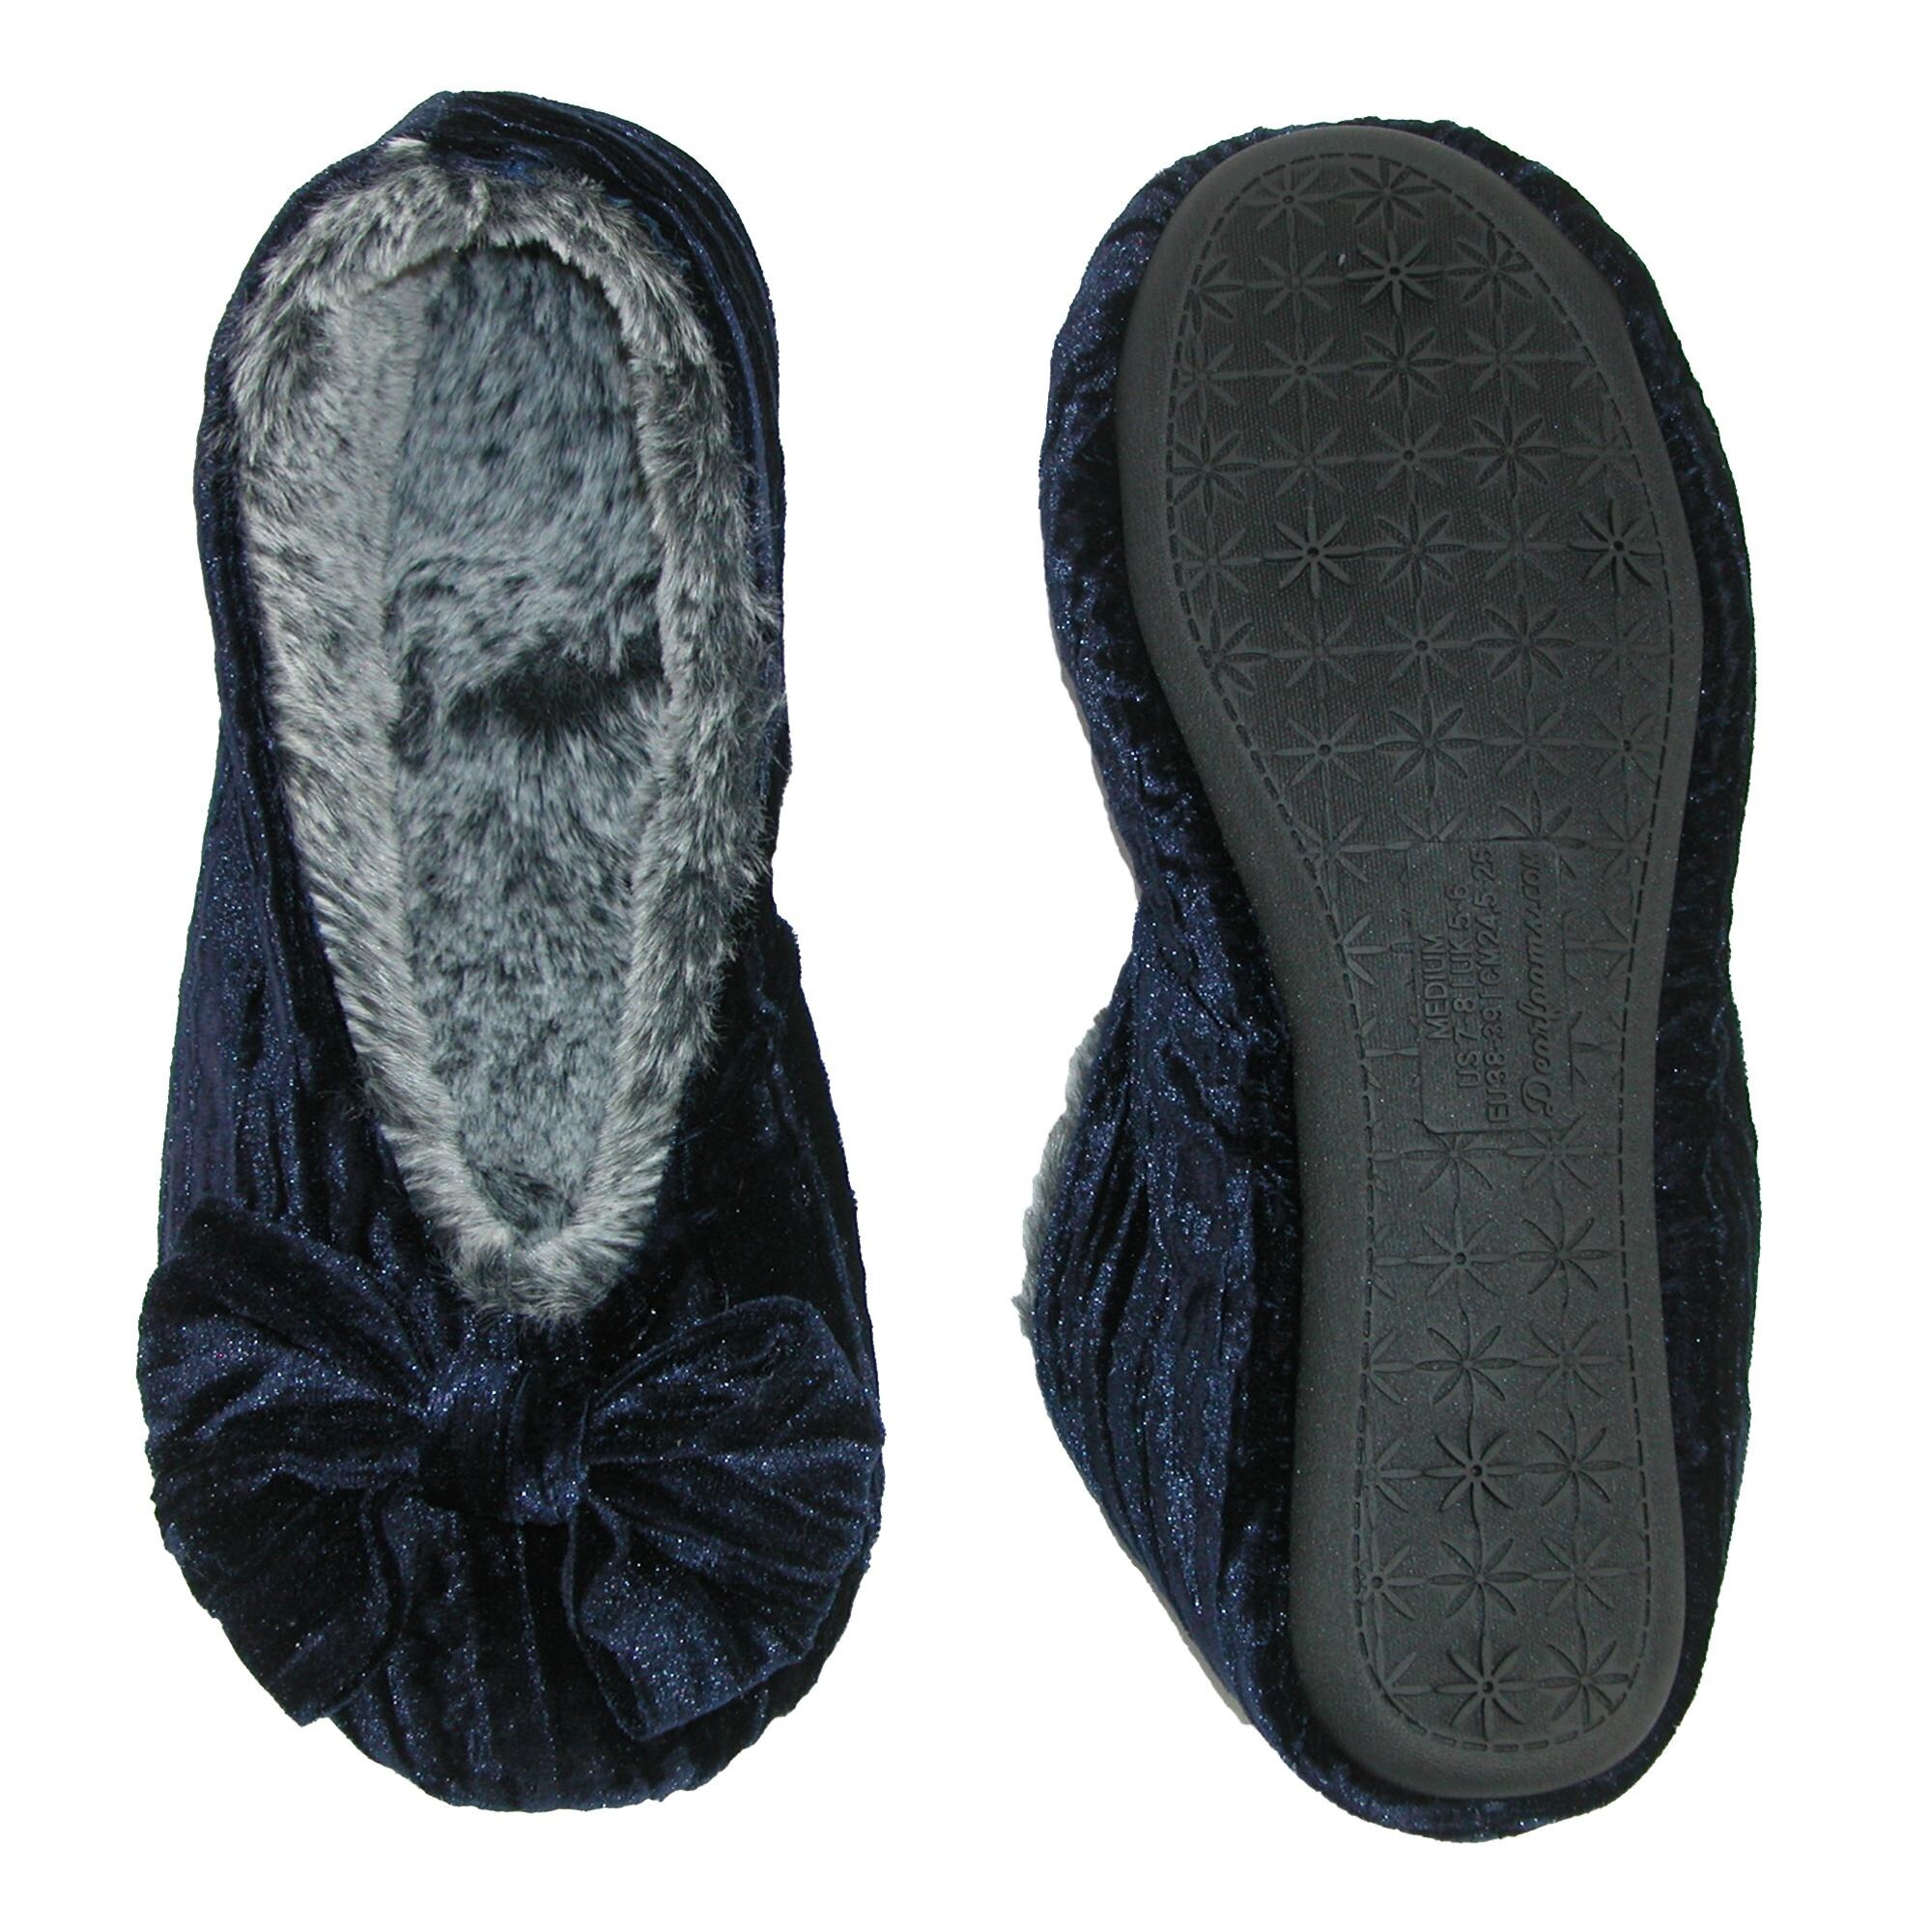 dearfoam ballet style slippers